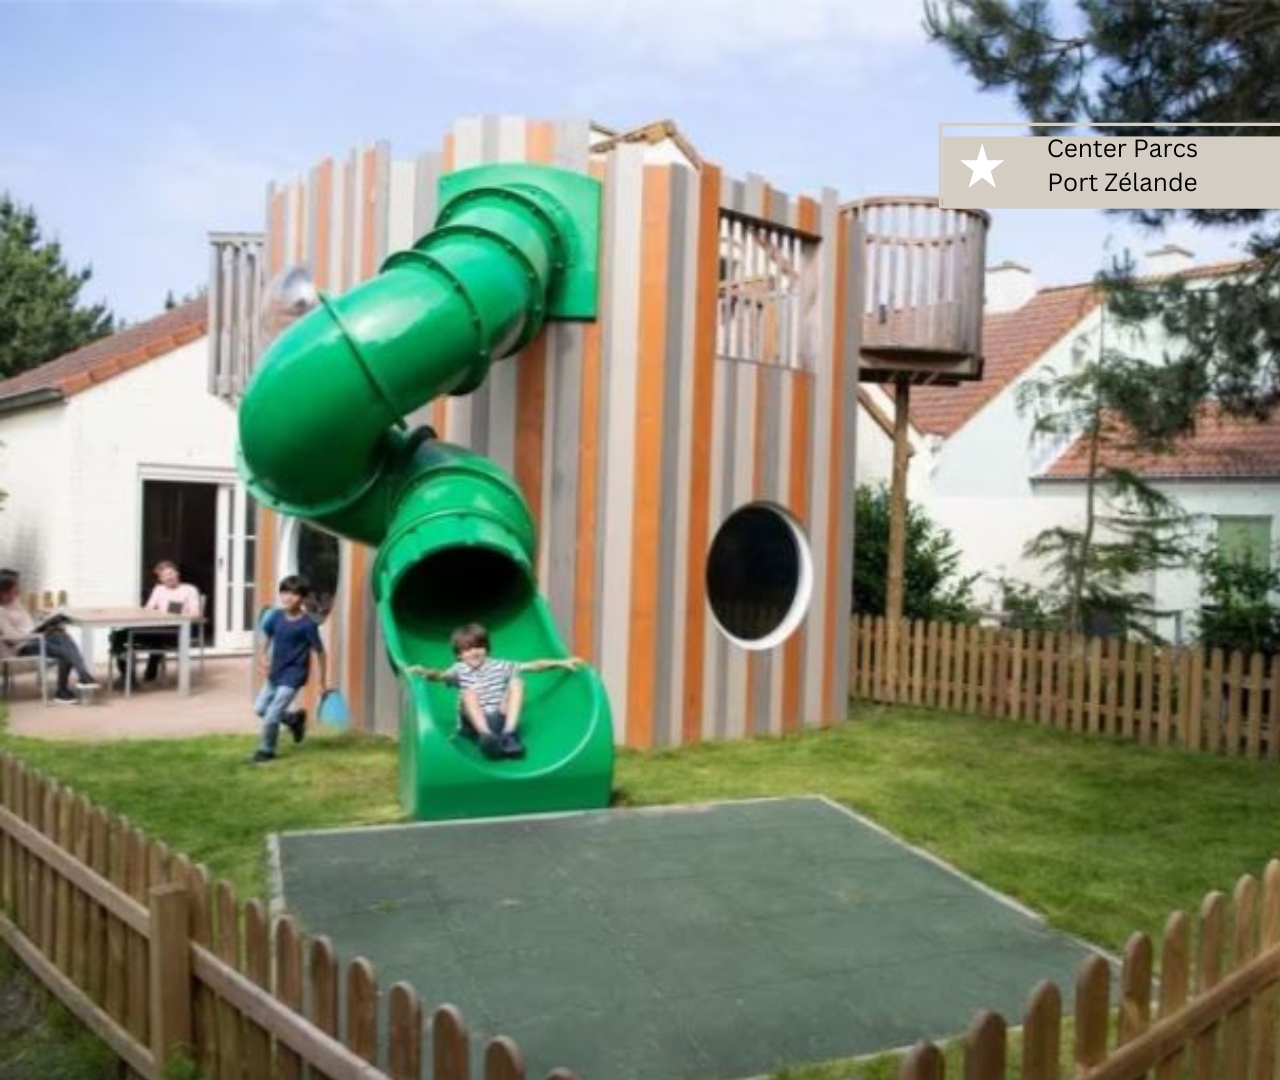 bester Ferienpark in Holland am Meer - Center Parcs Port Zelande mit Kinderferienhäusern (1)